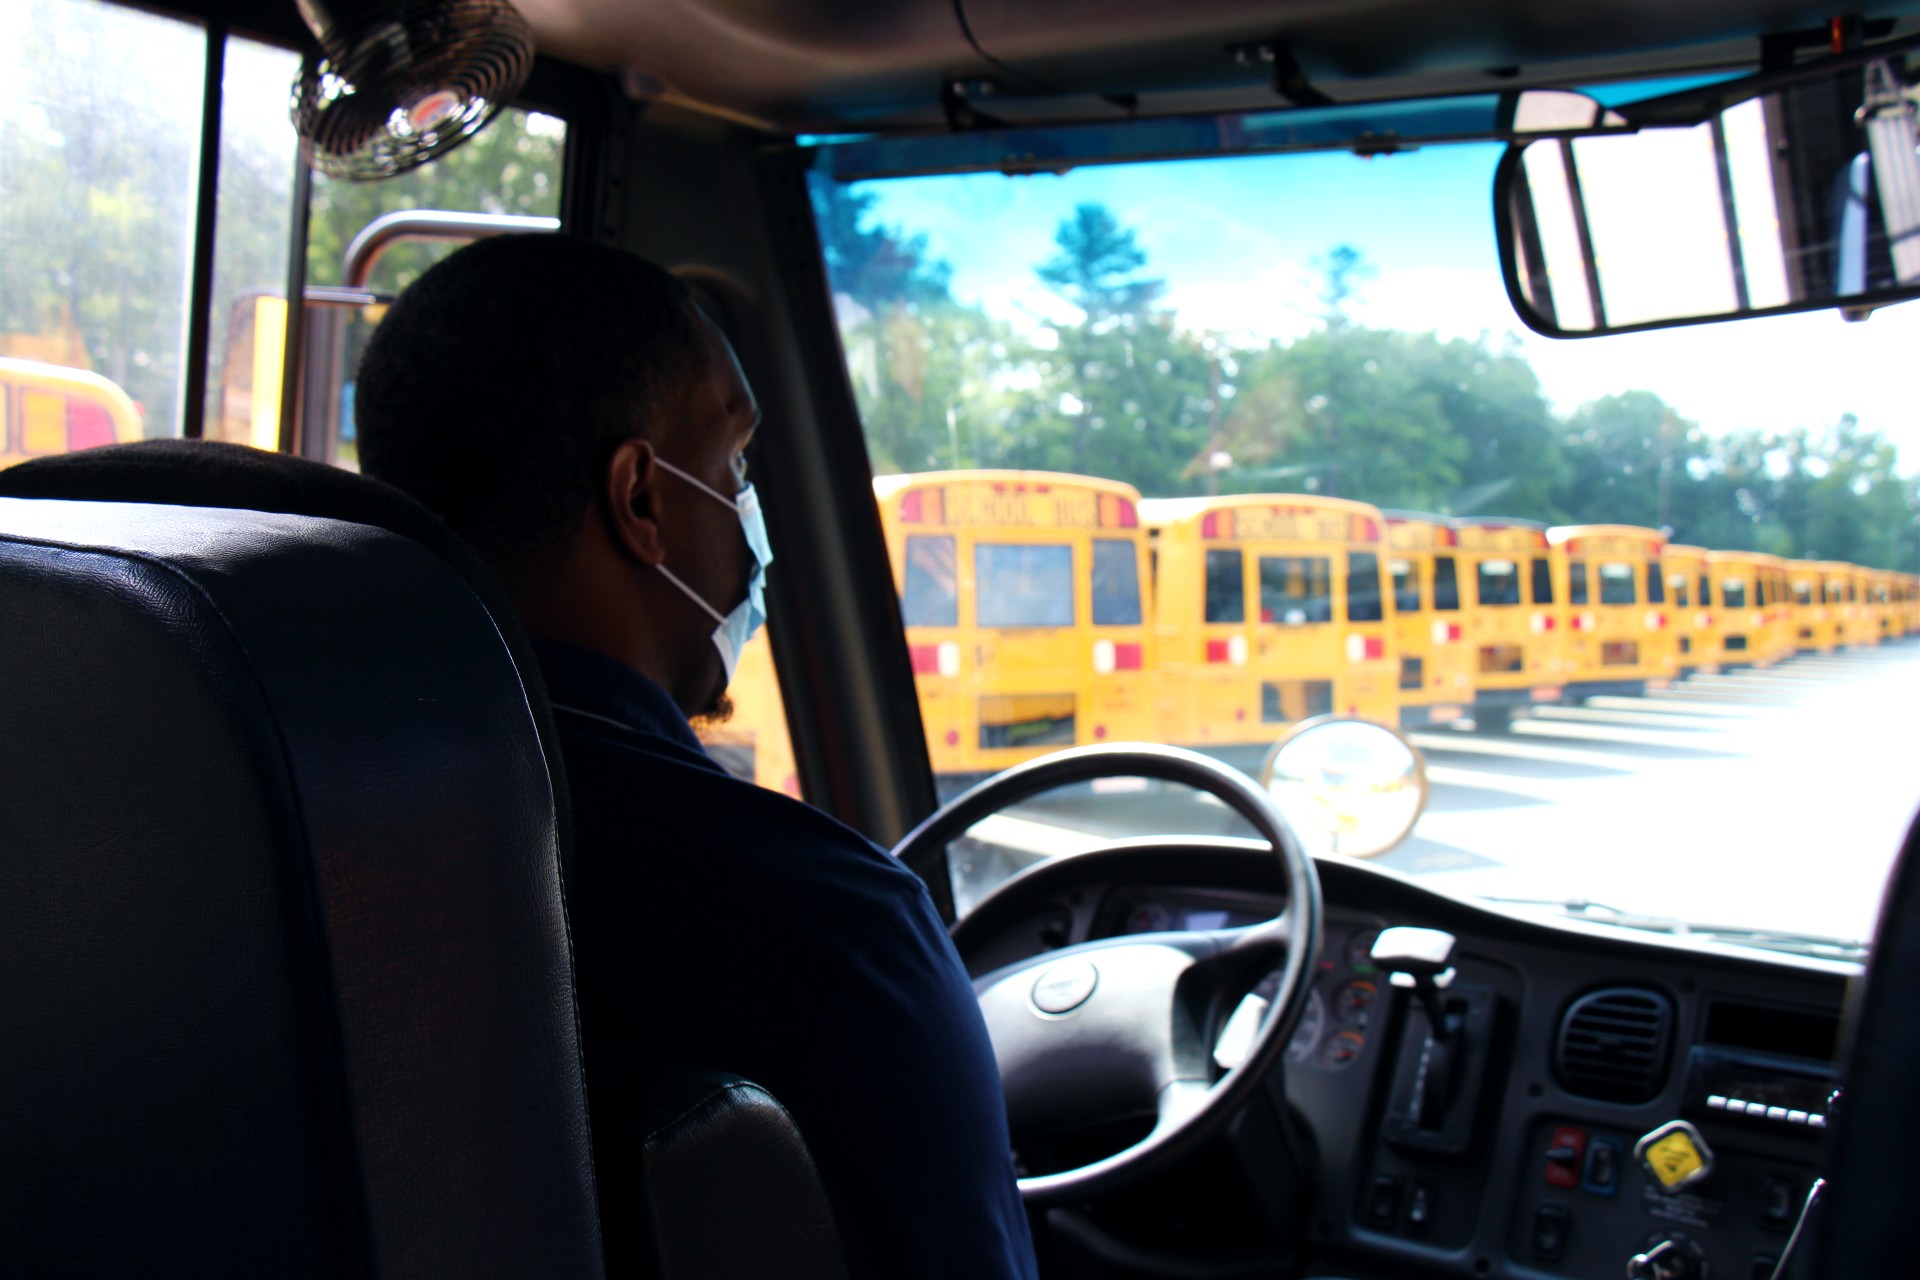 school bus conductor